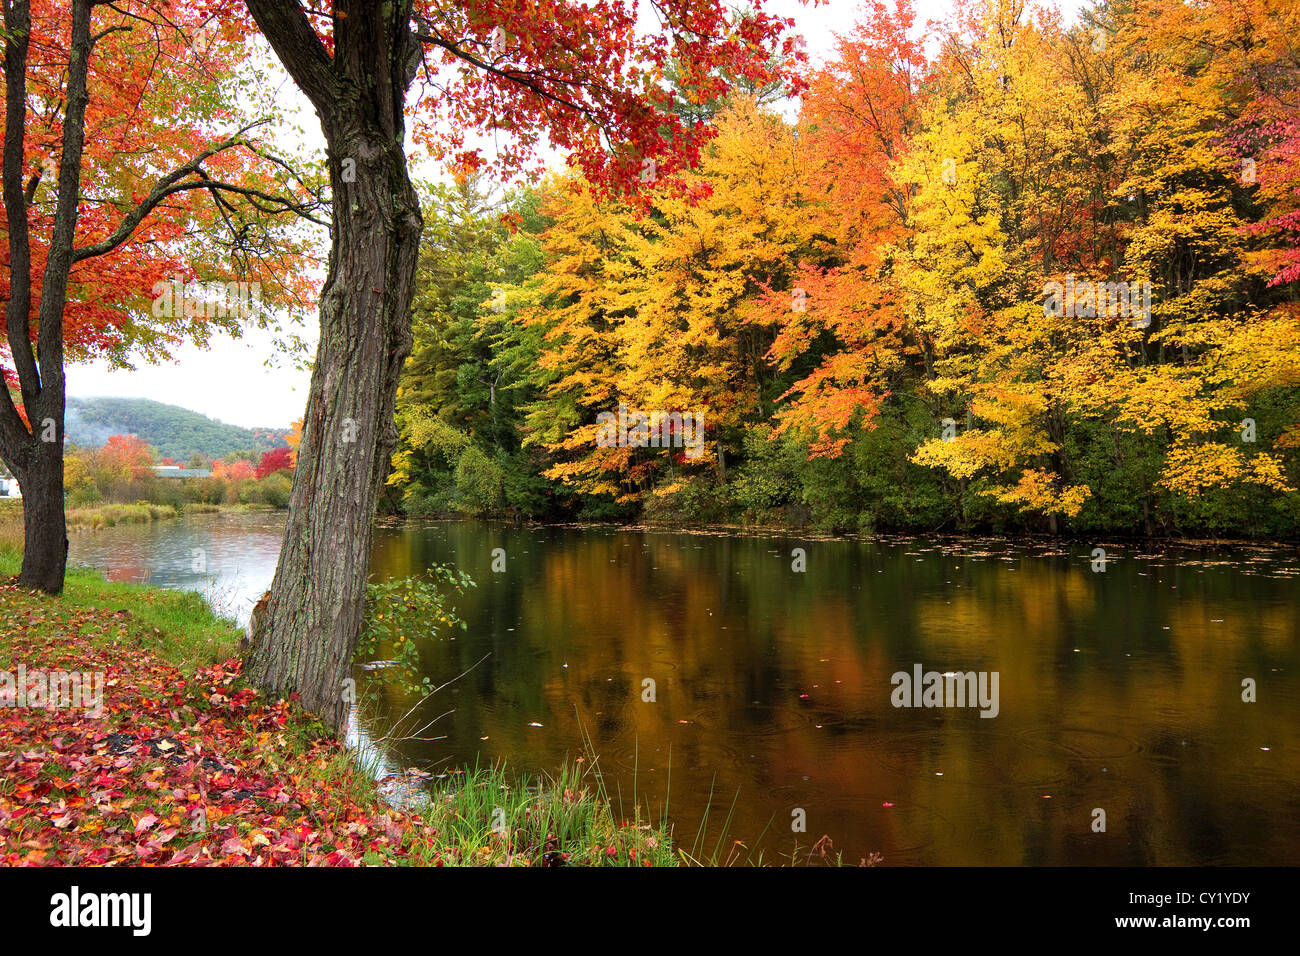 Automne, automne, arbres aux feuilles de couleurs vives dans le New Hampshire, New England fait un beau feuillage scène avec couleurs d'automne. Banque D'Images